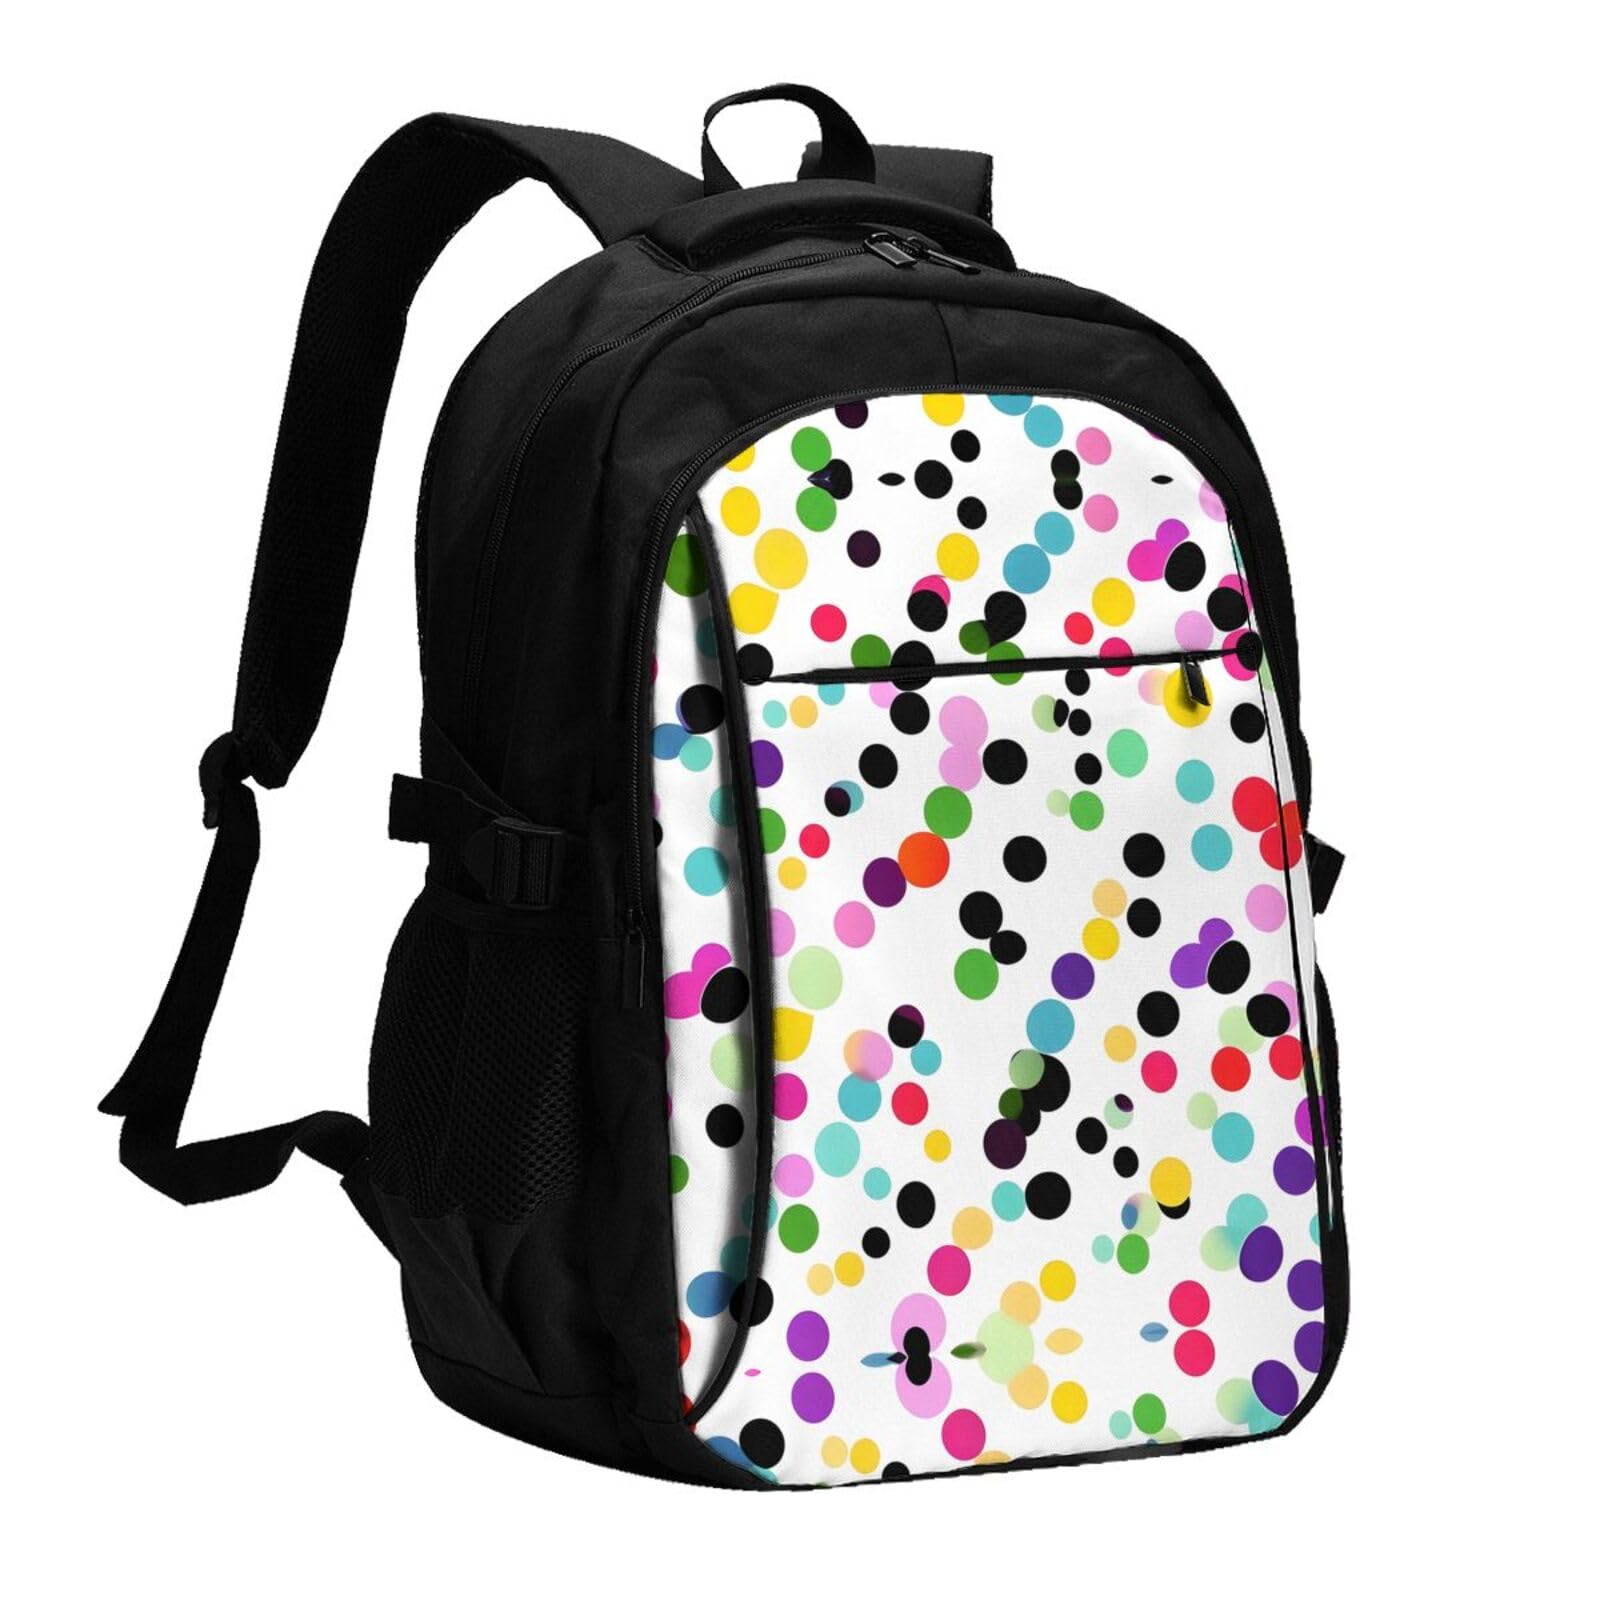 送料無料OdDdot Twister Polka Dots Travel Laptop Usb Backpack Water Resistant College Bag Computer Bag Fits 15.6 Inch Not